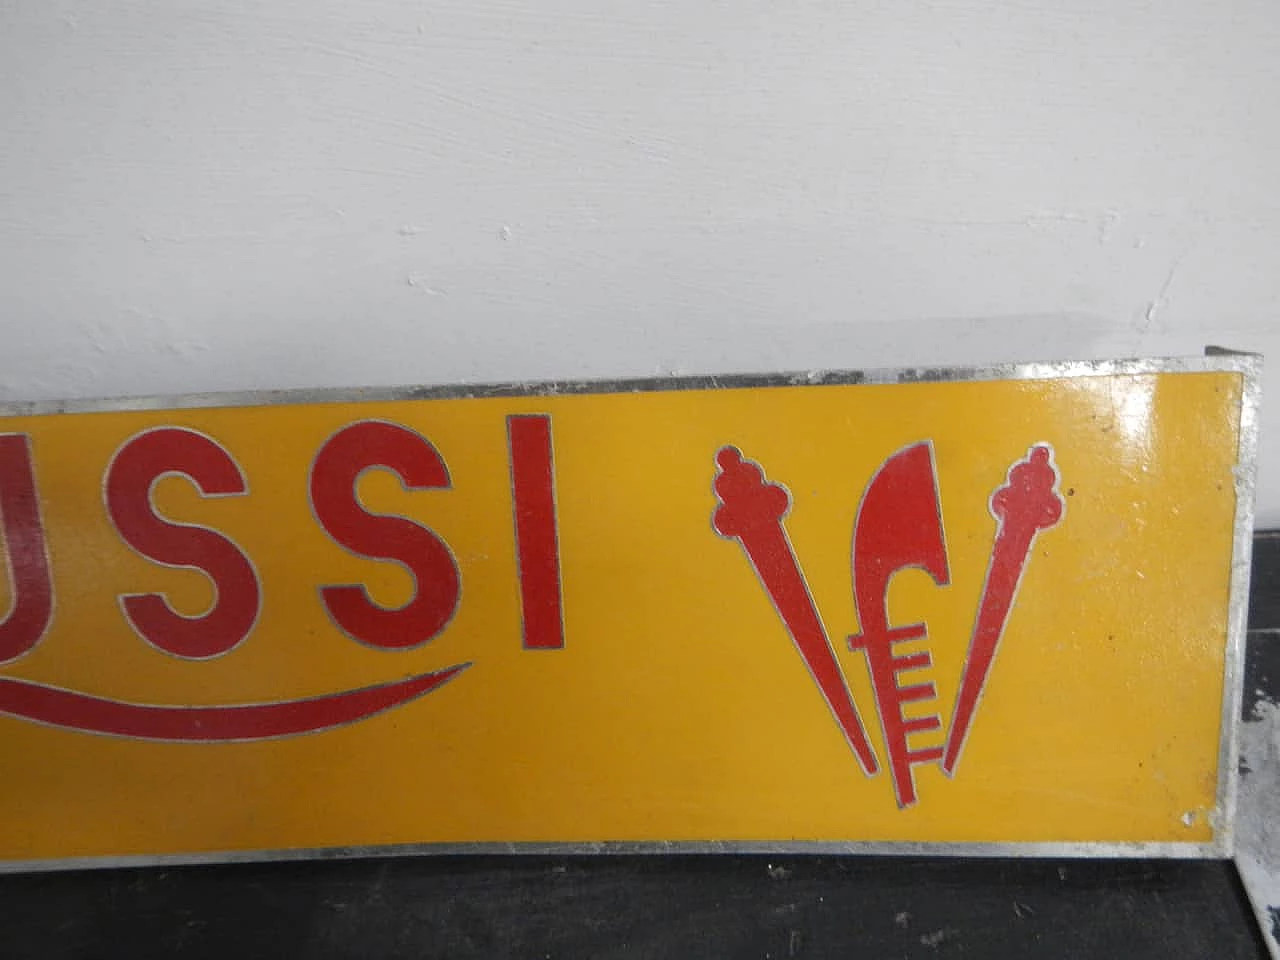 Biscotti Colussi Venezia sign, 1950s 6